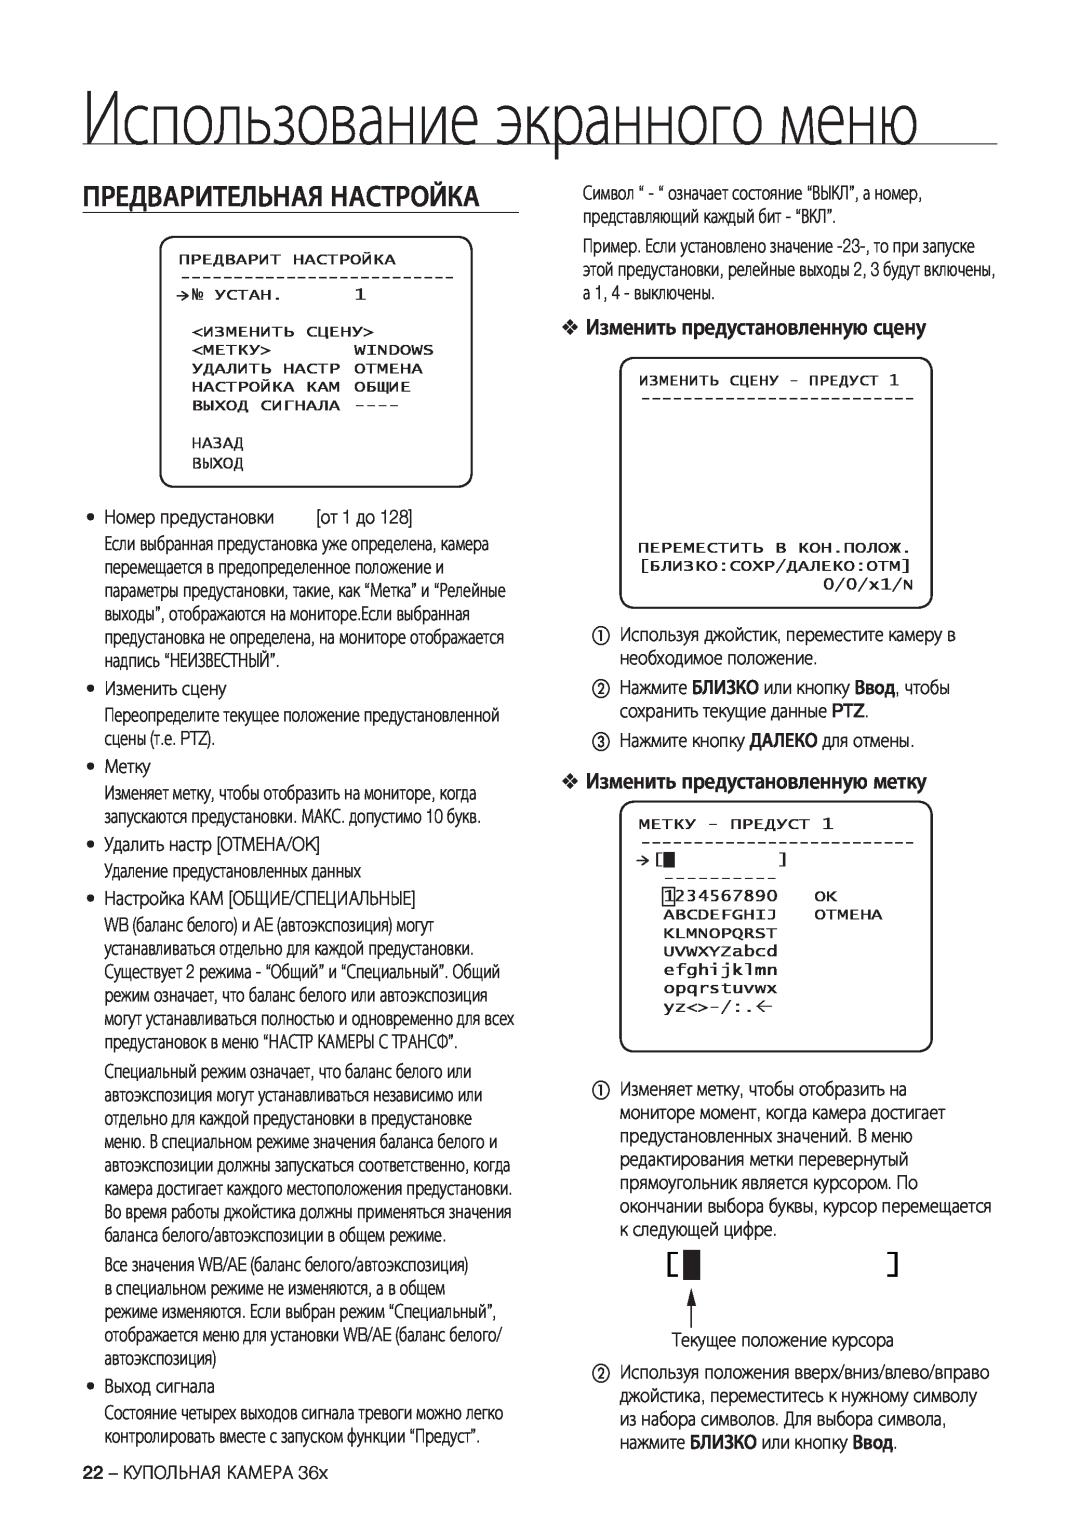 Samsung SCC-C7478P manual Предварительная Настройка, Изменить предустановленную сцену, Изменить предустановленную метку 